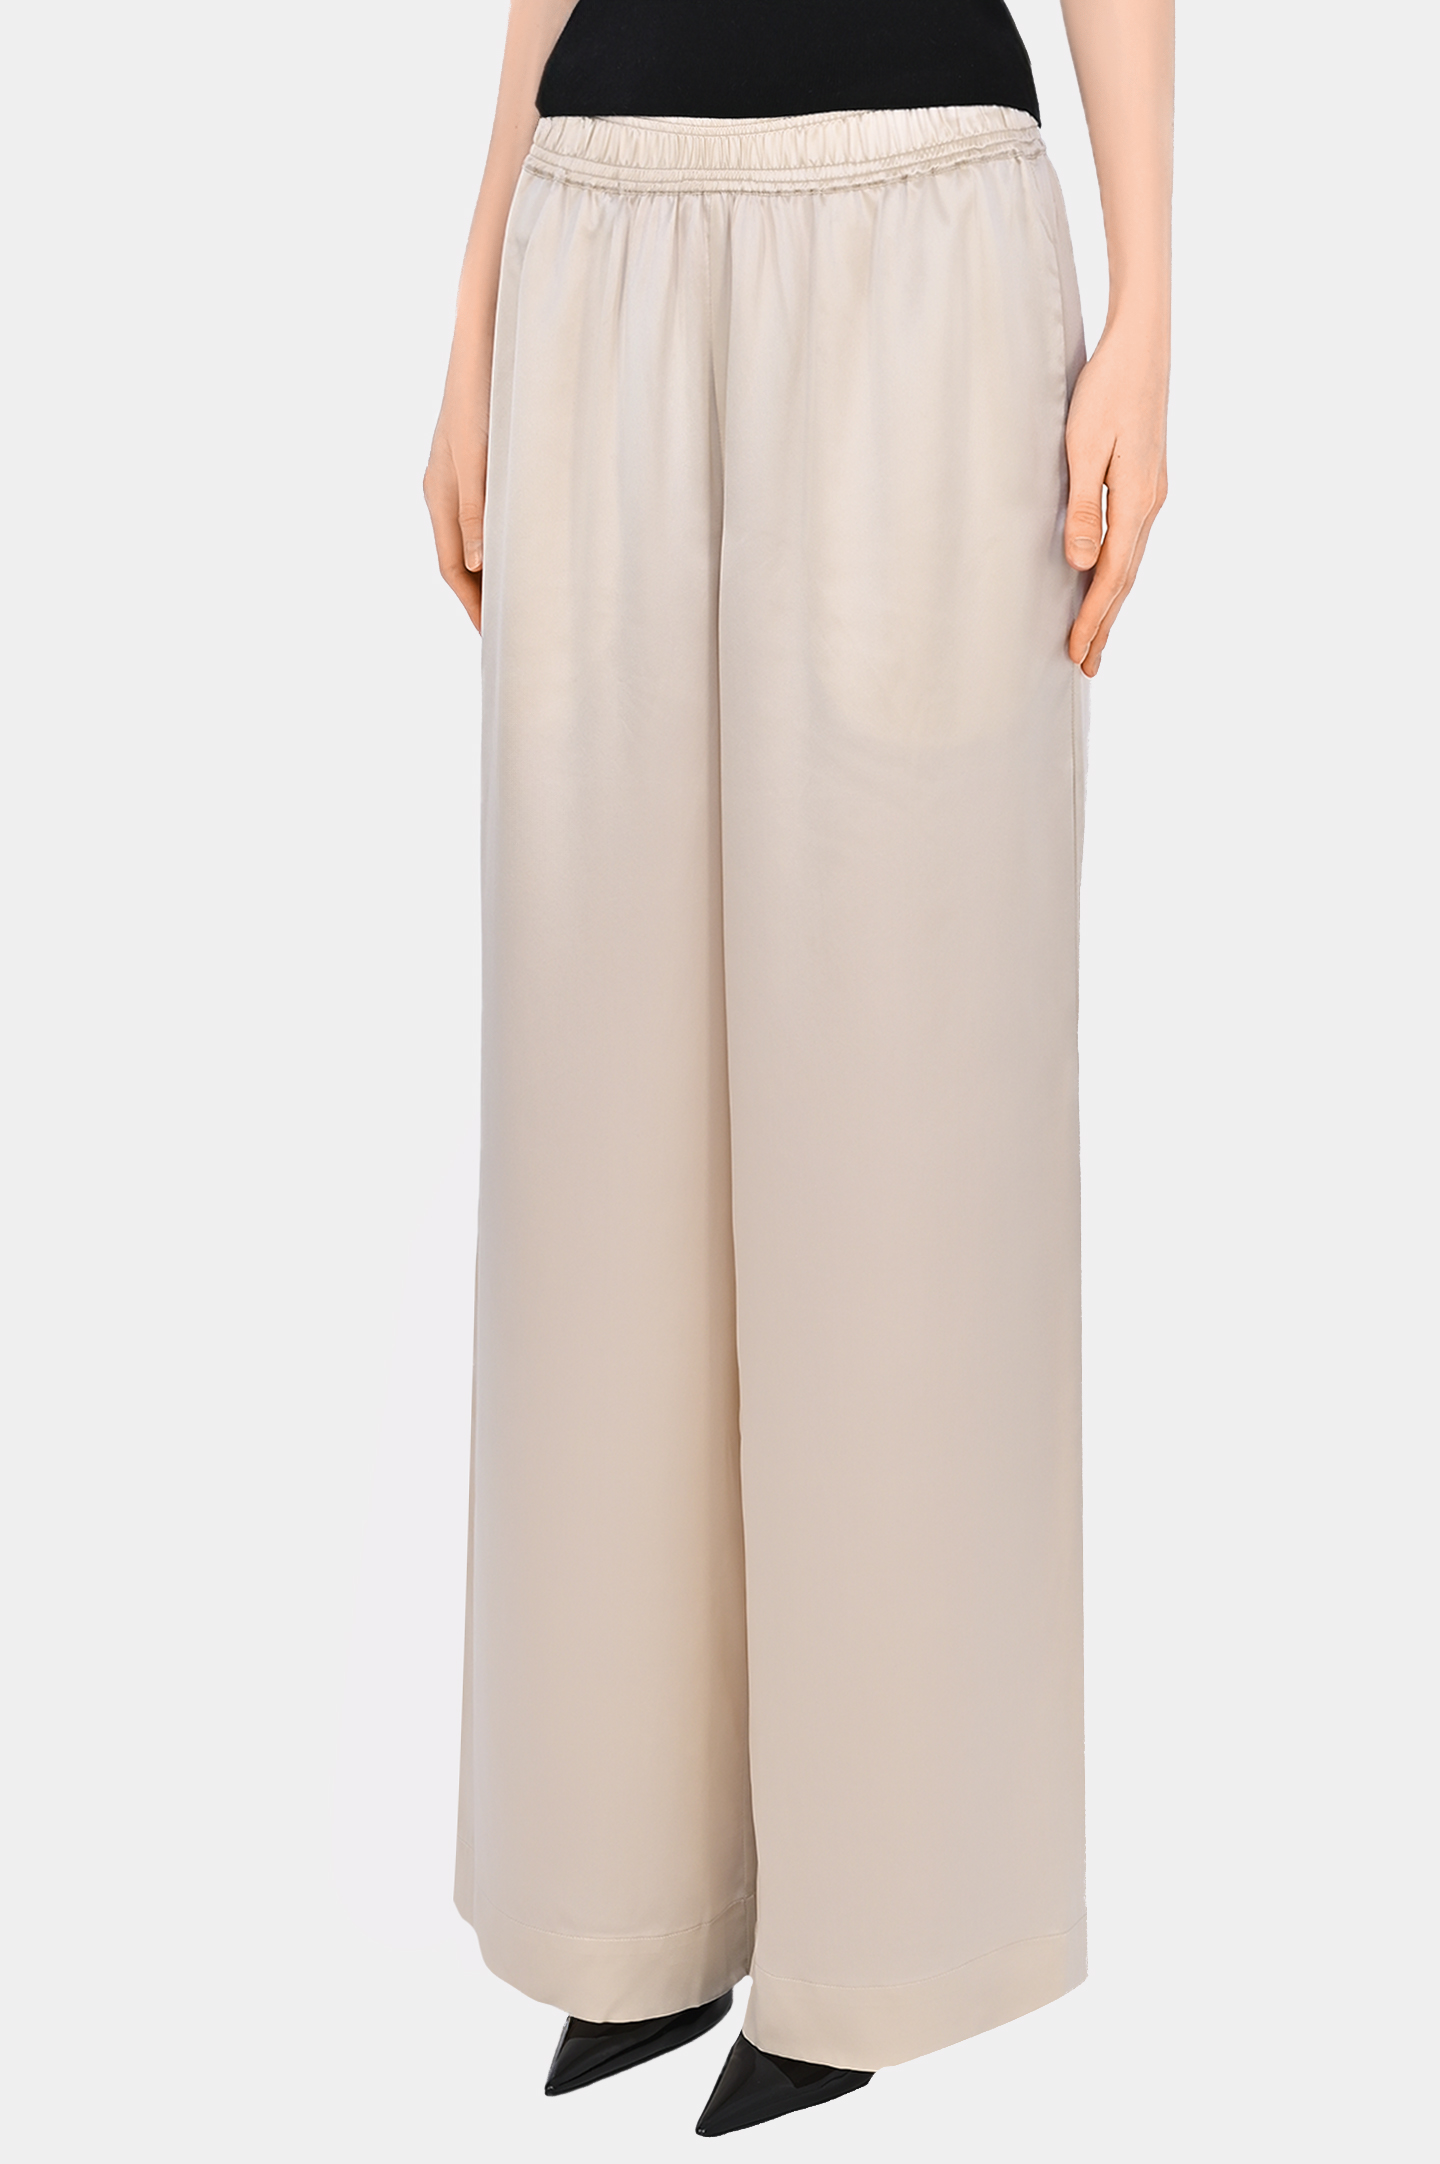 Широкие брюк из шелка JACOB LEE WSP008SS24PW, цвет: Светло-бежевый, Женский